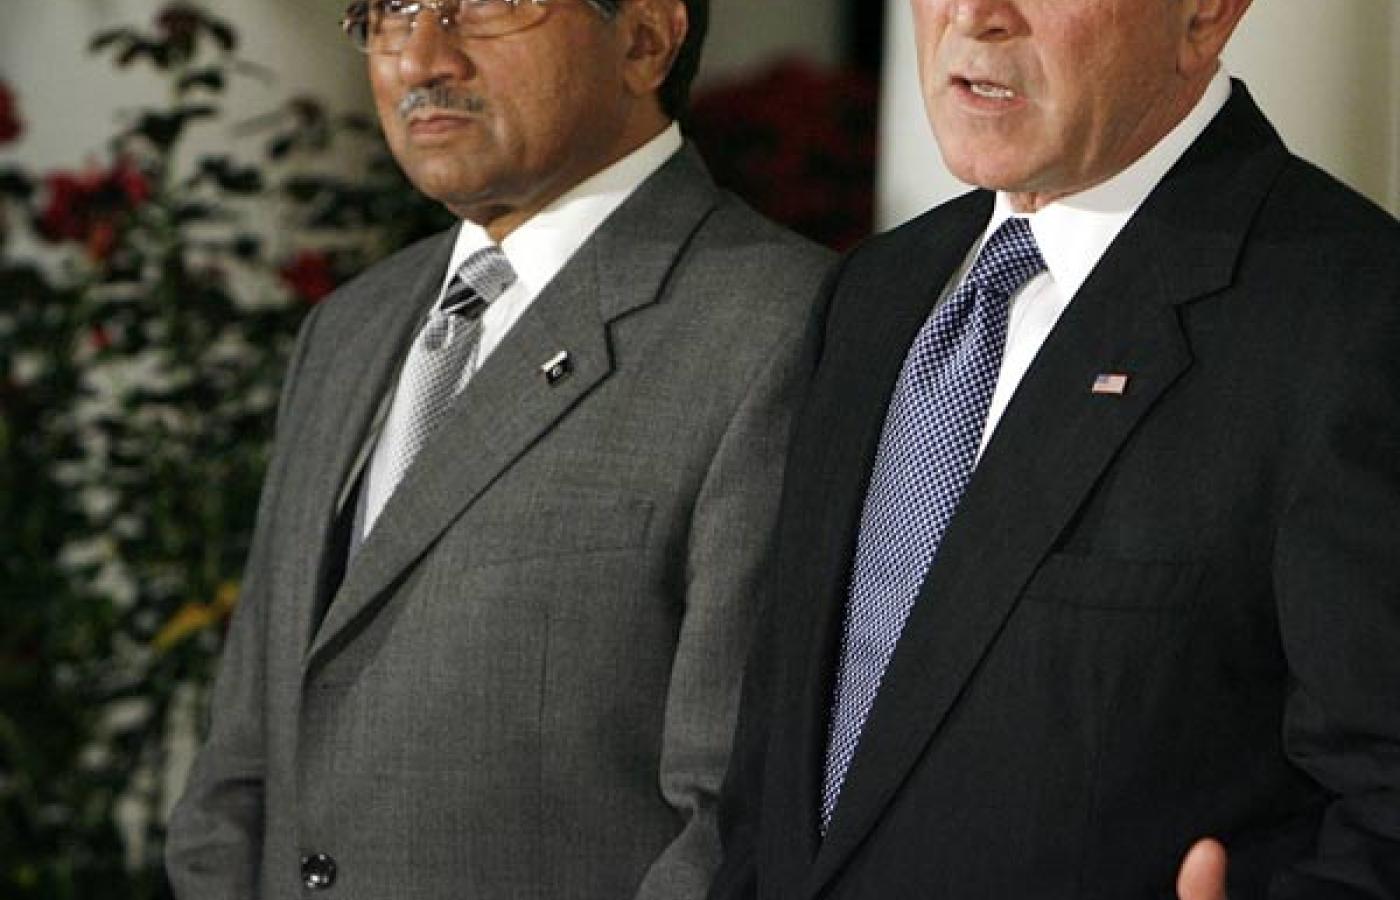 Niedawne wycofanie niekwestionowanego poparcia społeczności międzynarodowej dla Musharrafa jest jednym z ważnych czynników podkopujących pozycję jego samego i jego zwolenników w Waszyngtonie